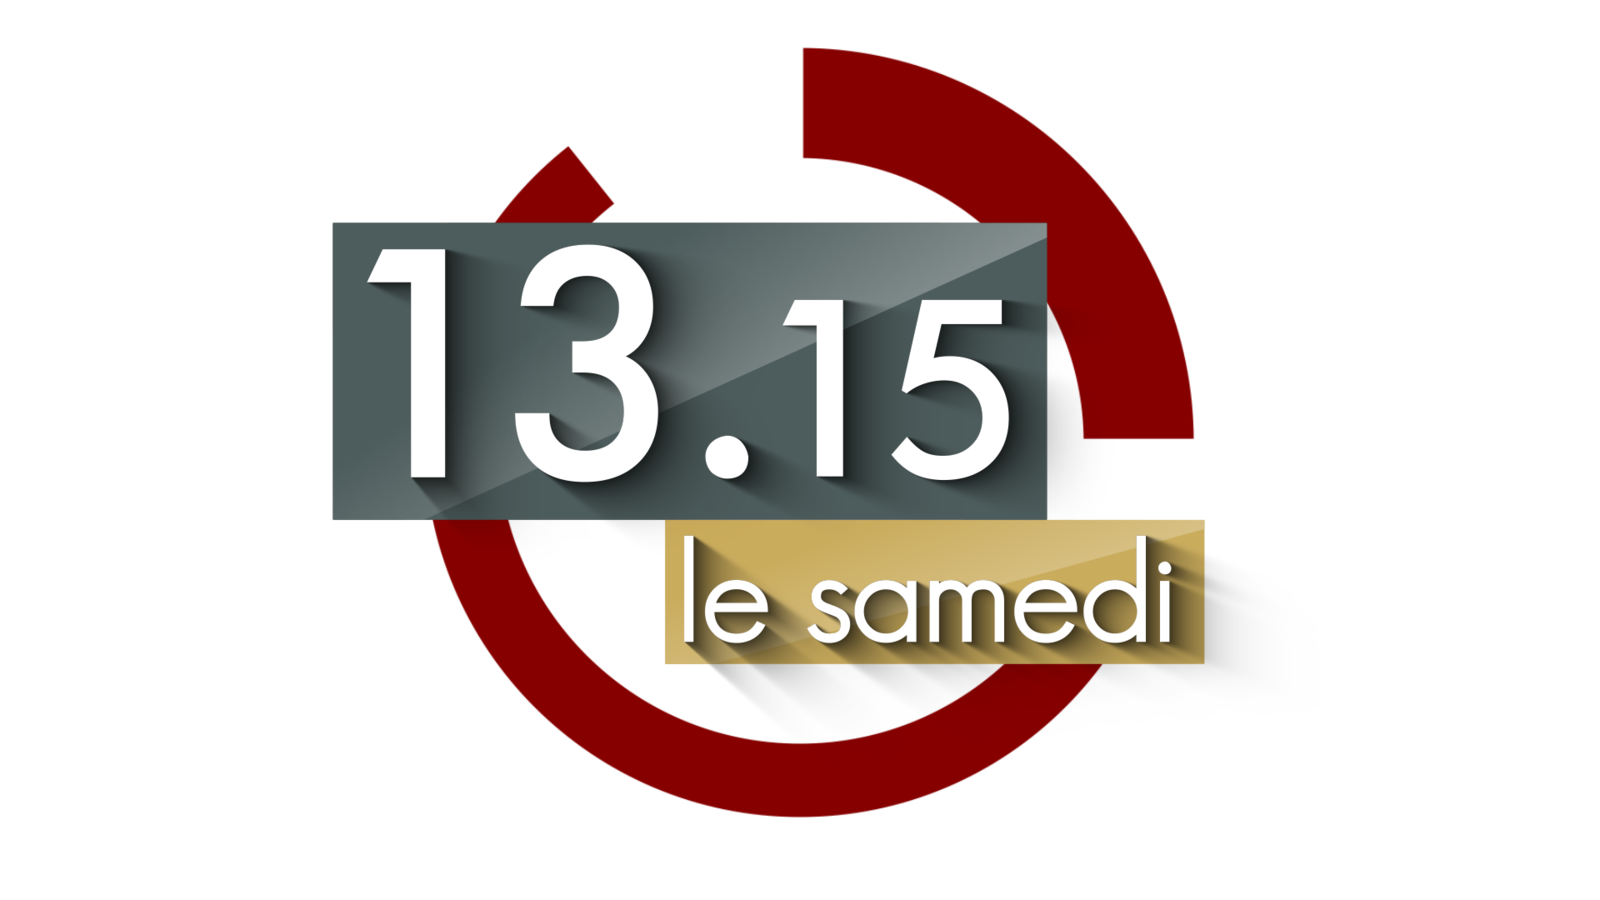 Hommage à Gisèle Casadesus : rediffusion d'un document ce samedi à 13h15 sur France 2.